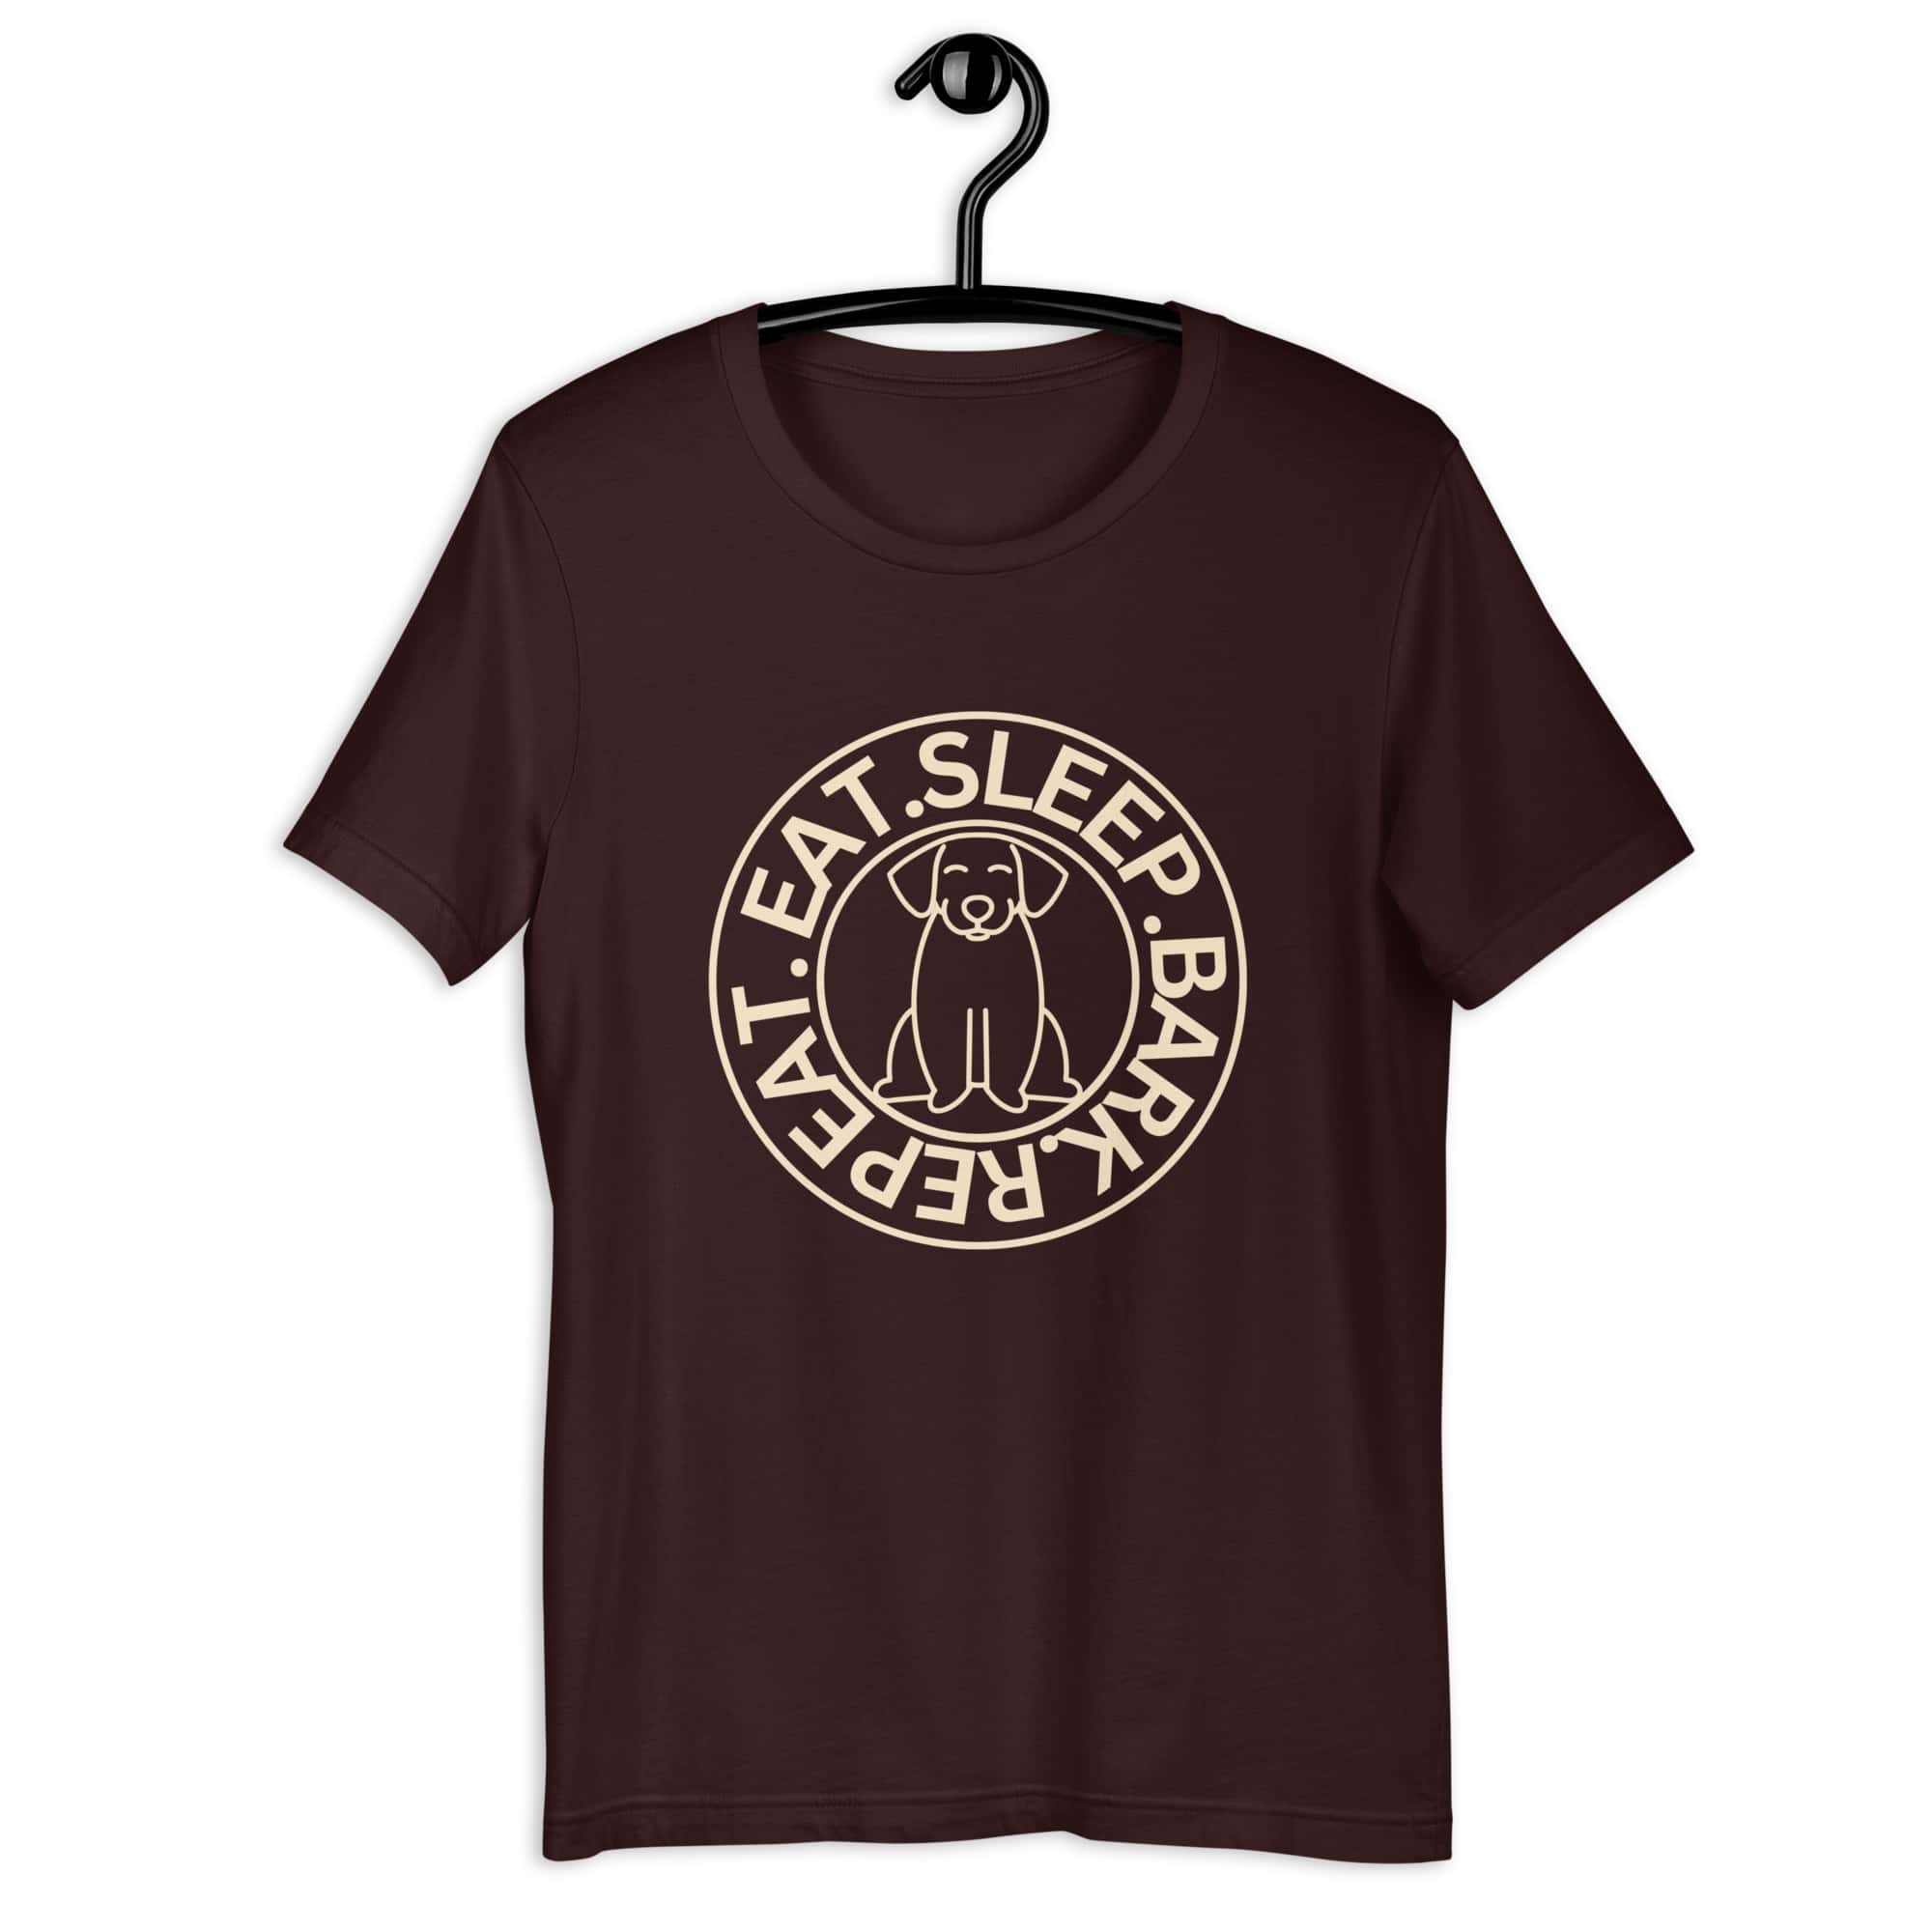 Eat Sleep Bark Repeat Ransylvanian Hound (Erdélyi Kopó) Unisex T-Shirt. Oxblood Black